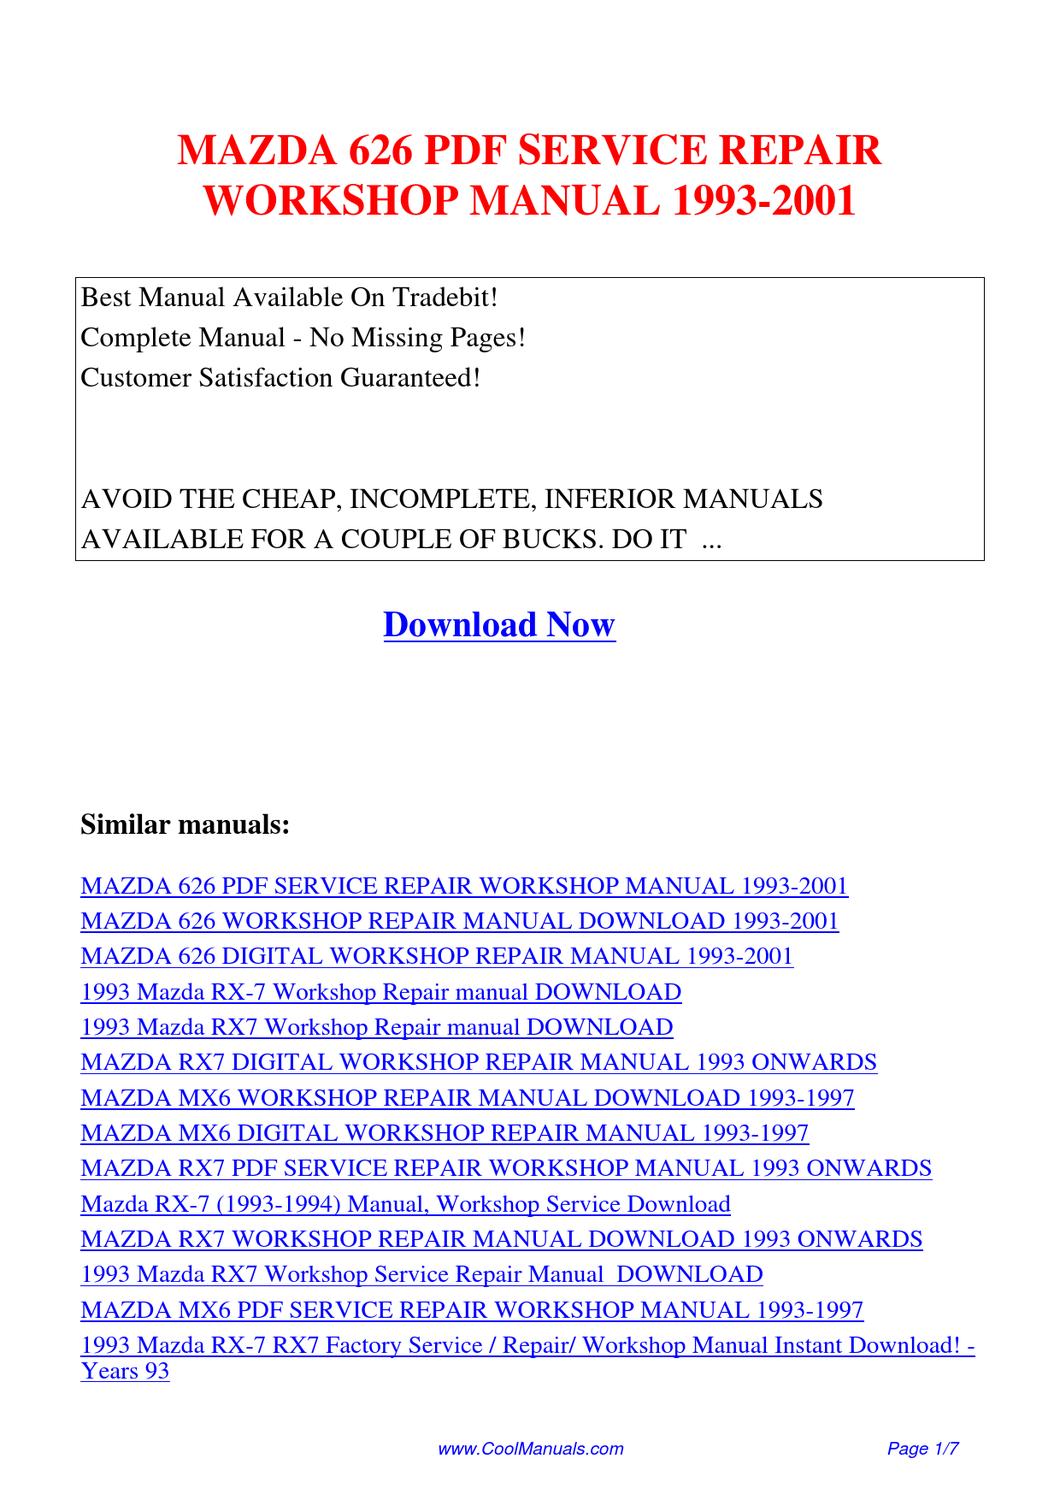 Mazda 626 Manual Download